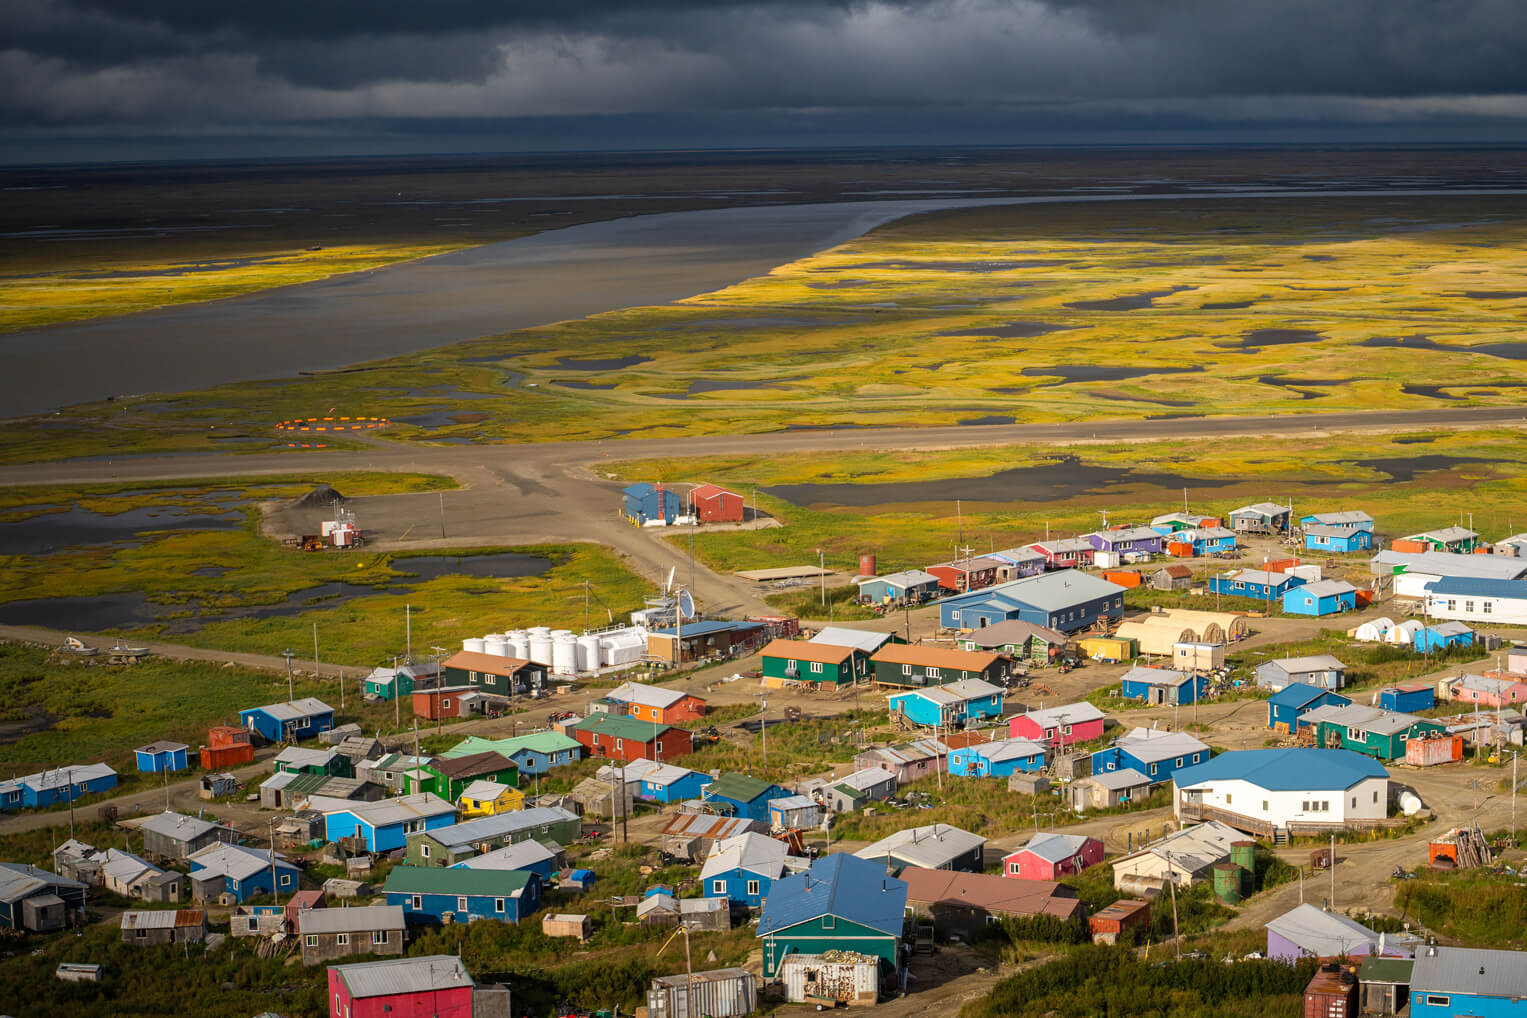 Scammon Bay is a remote coastal village in Alaska's interior.